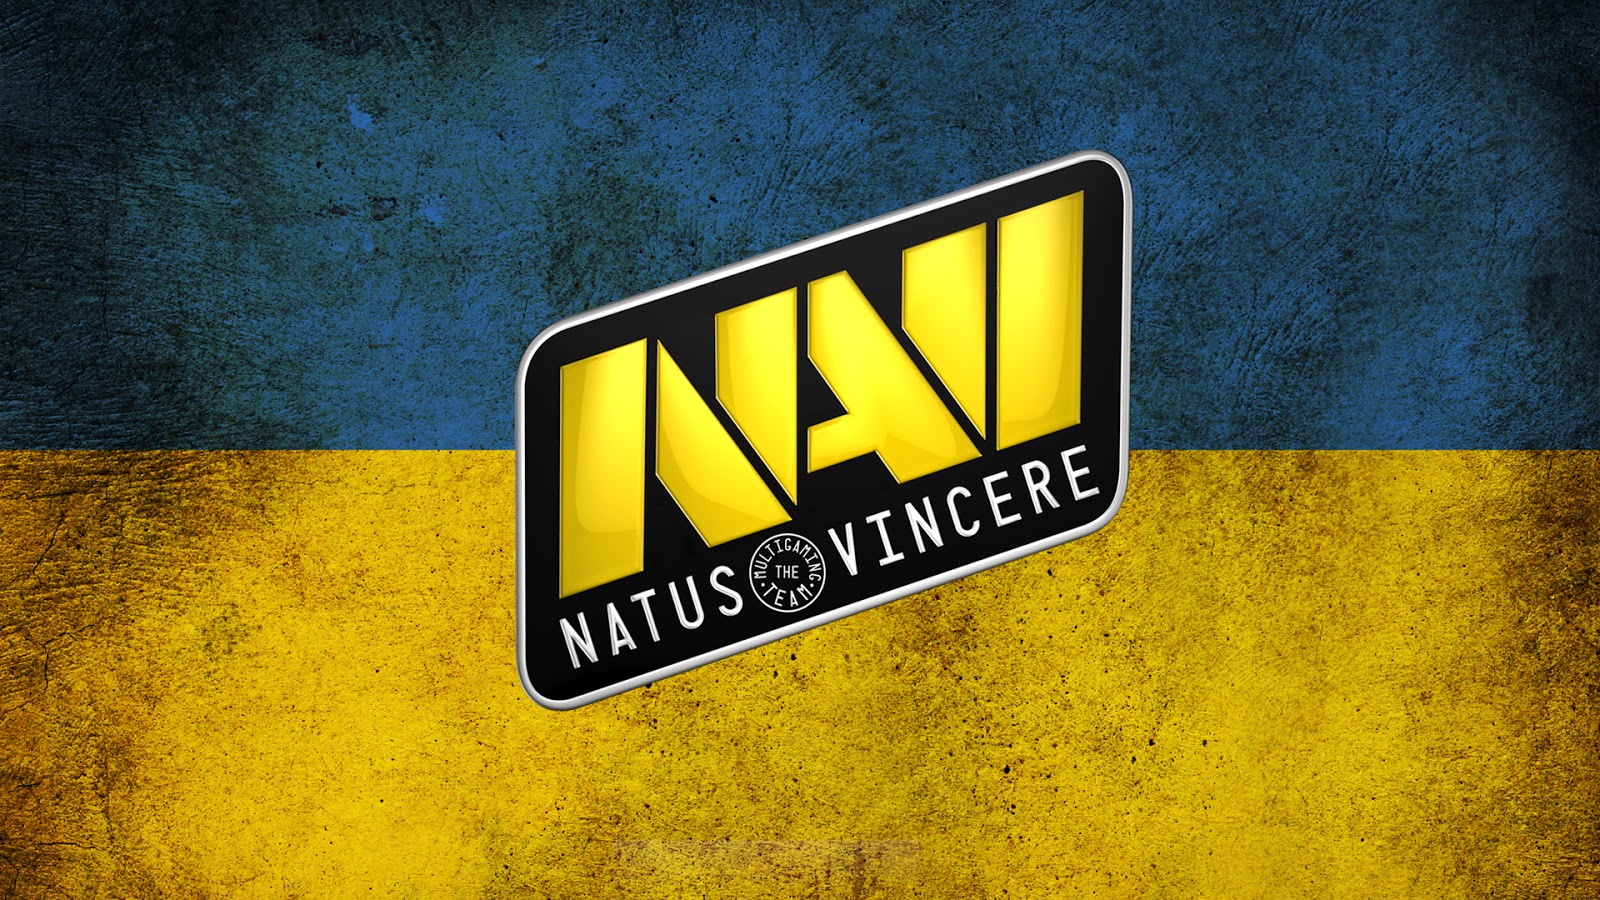 NaVi о трансфере electroNic и Perfecto: желаем удачи ребятам в новом сезоне